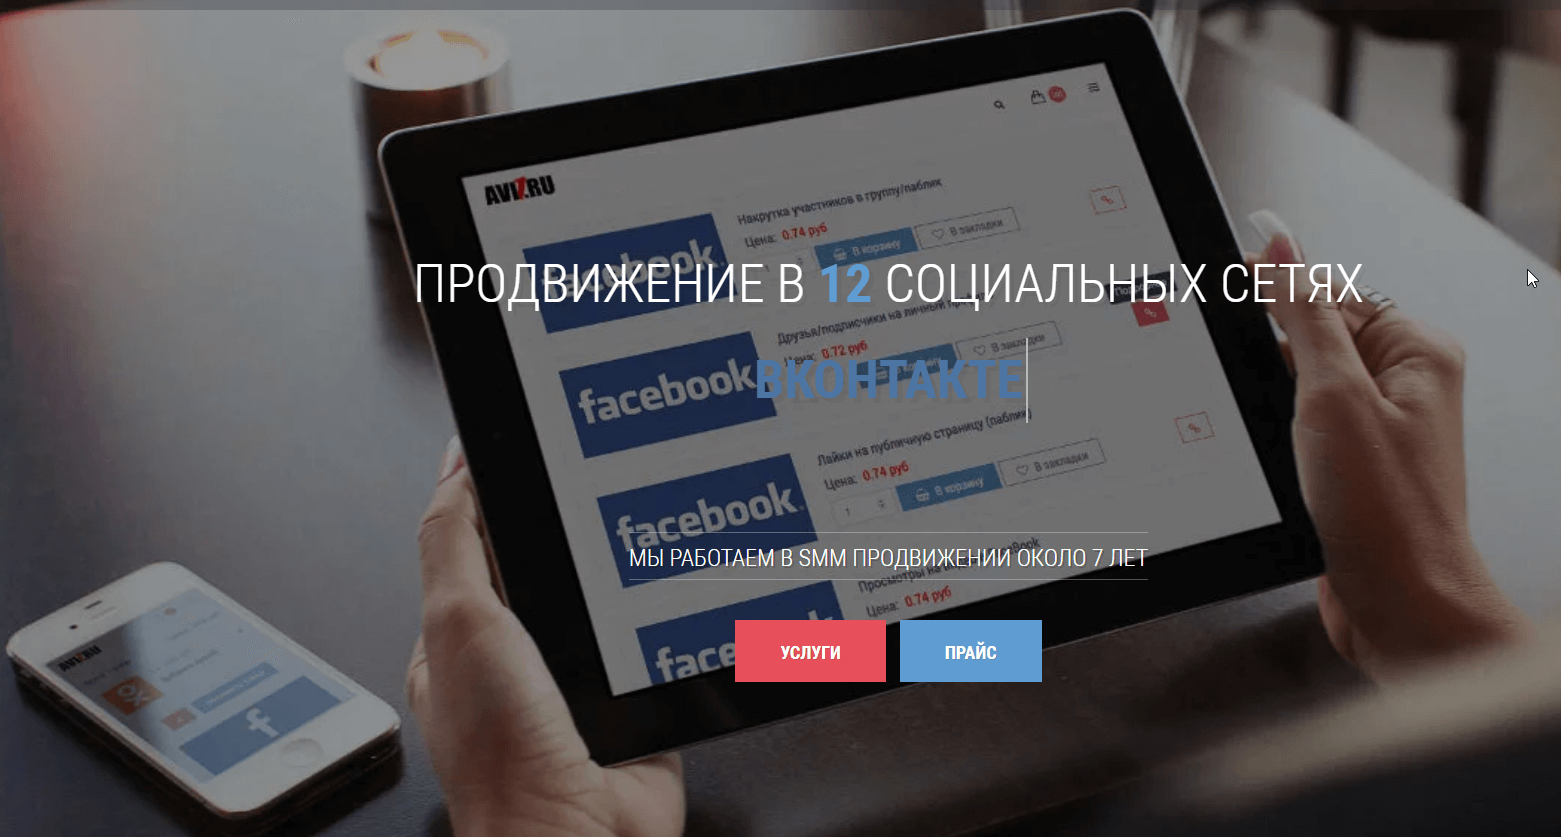 Сервис продвижения в социальных сетях - avi1.ru